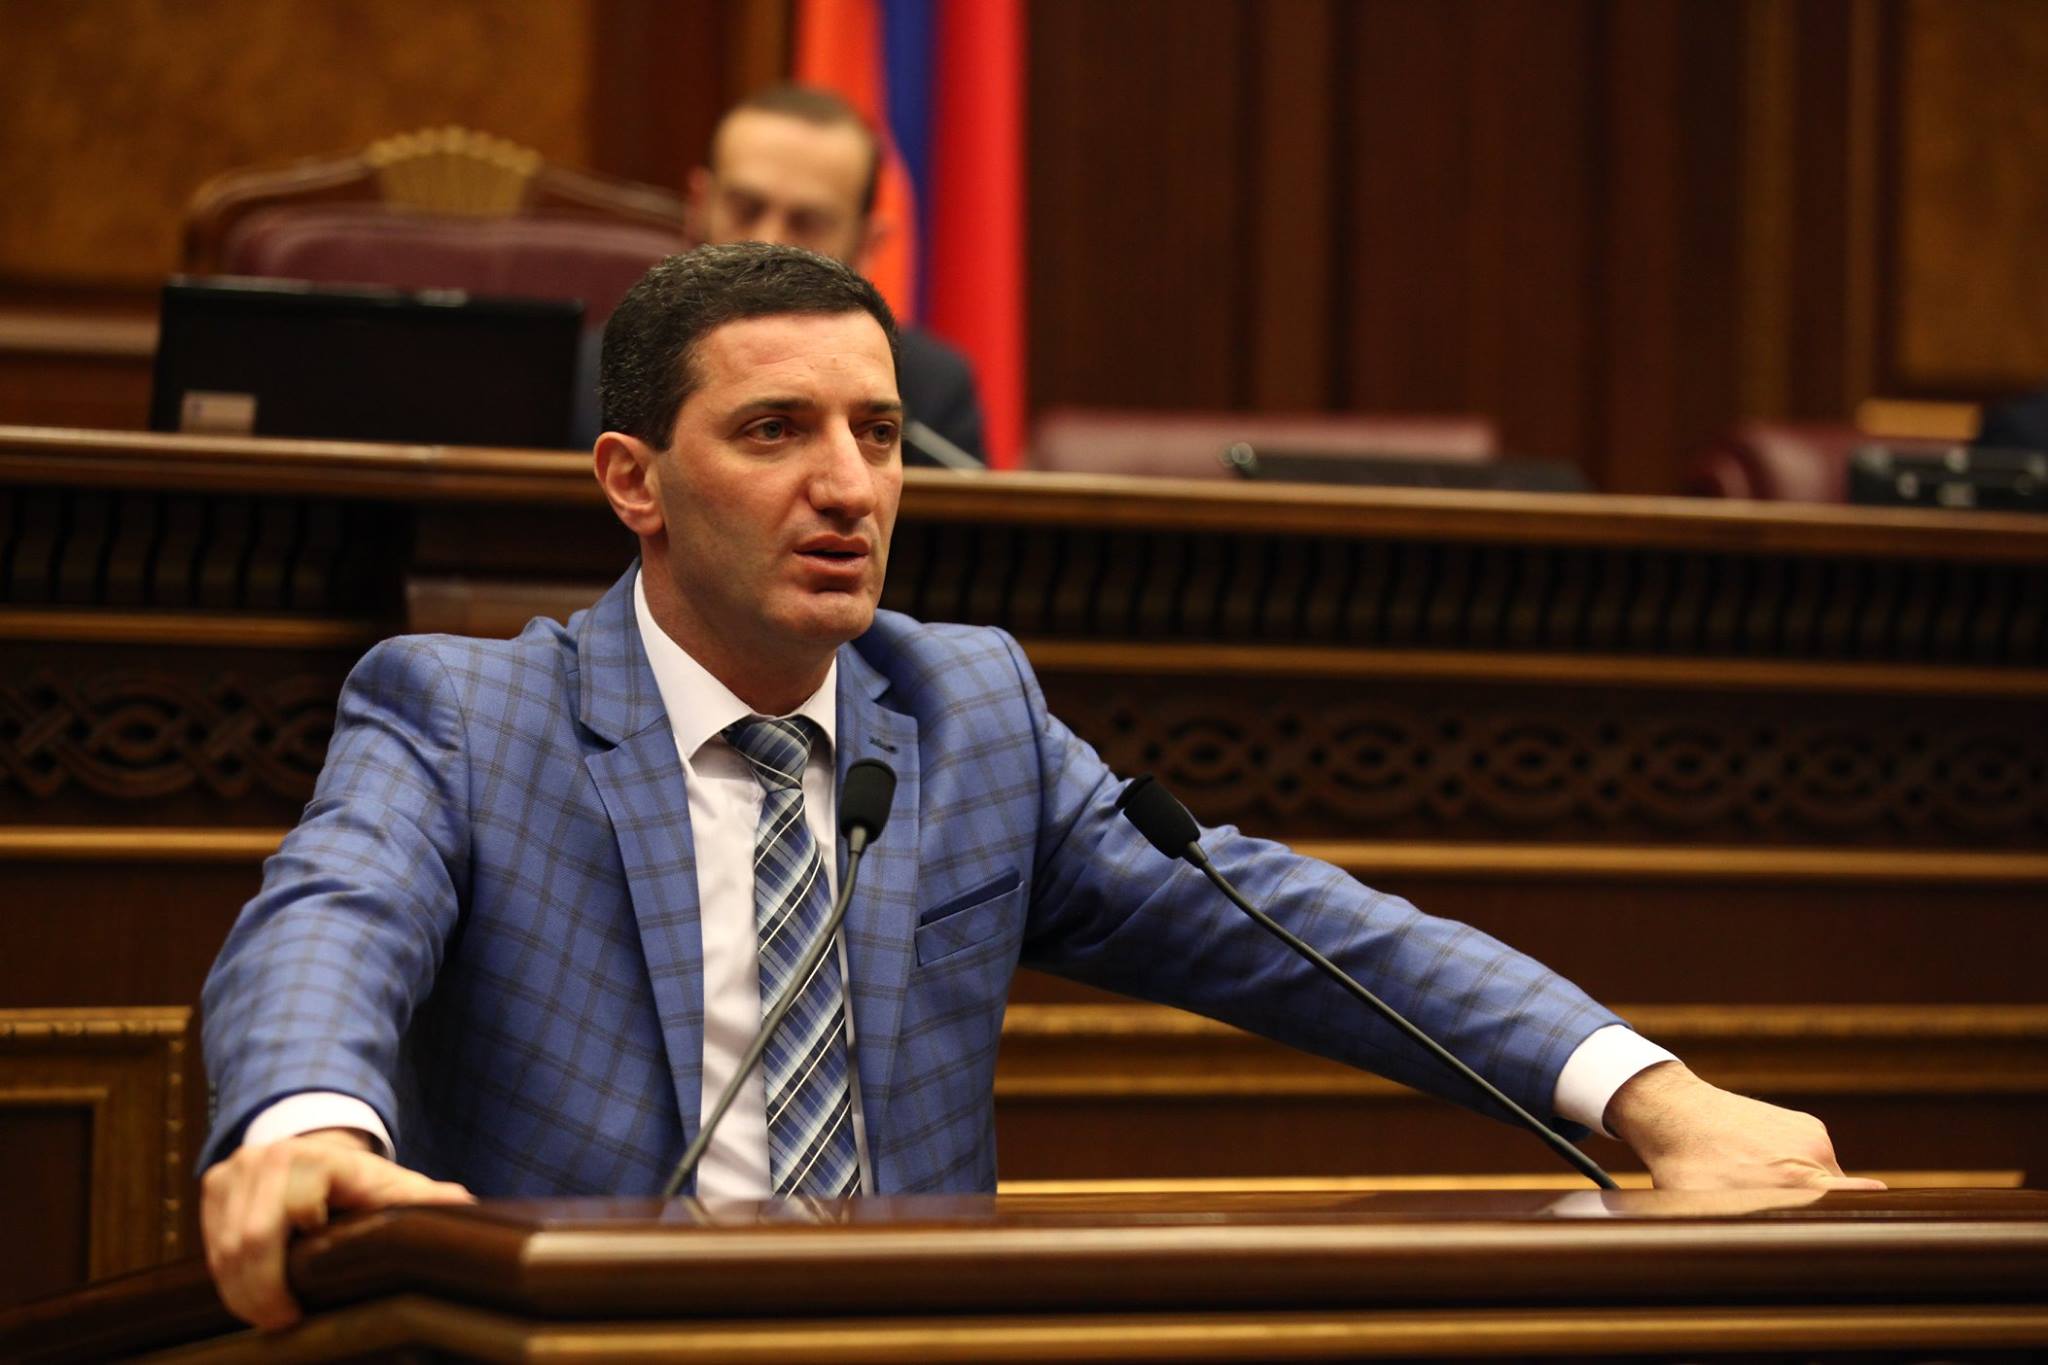 Работу в парламенте продолжит в качестве независимого депутата: Петросян покидает ППА